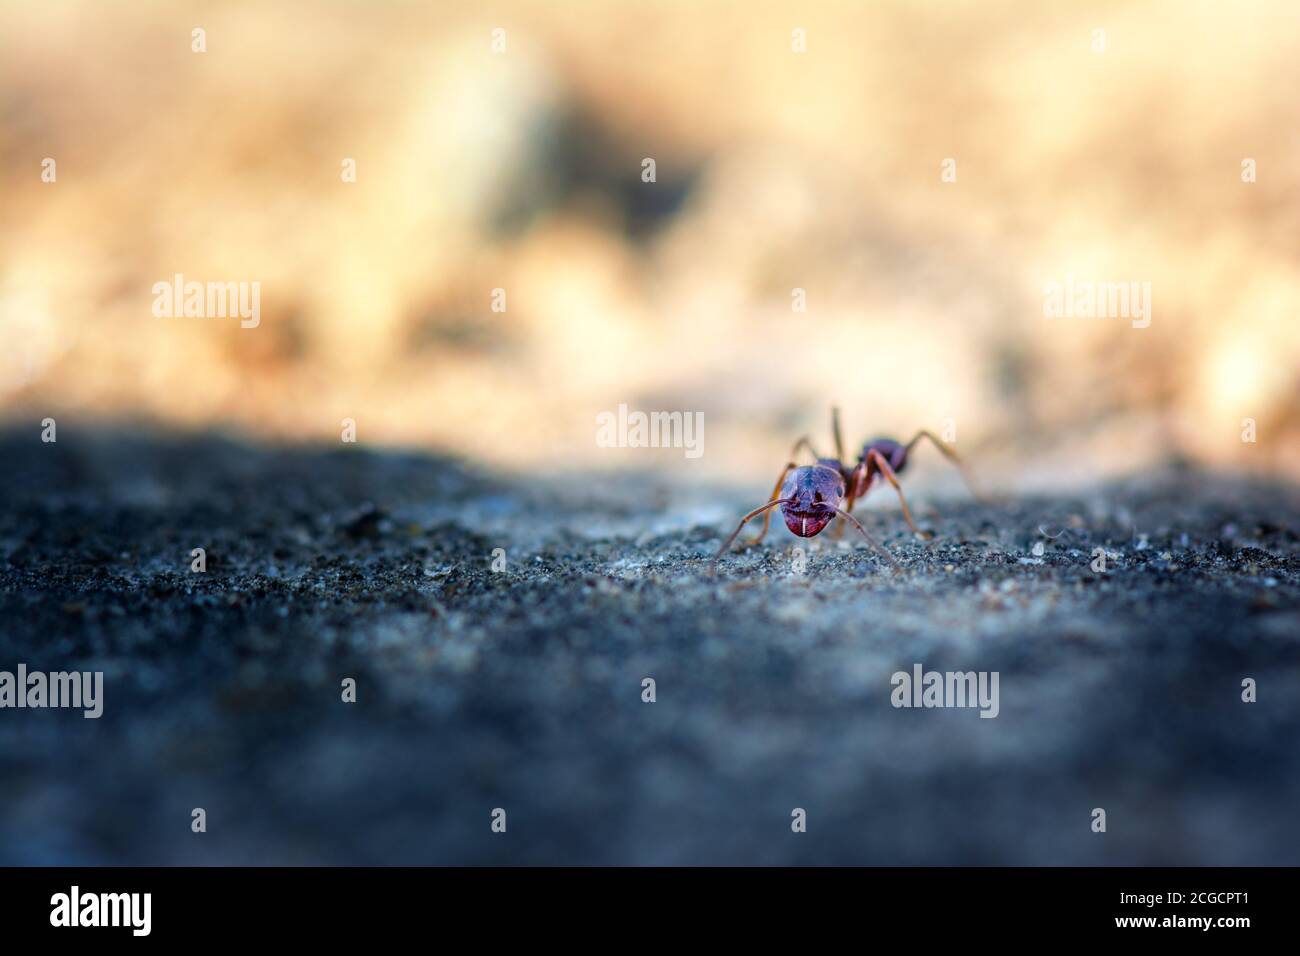 Frühling. Makroaufnahme einer Ameise in einem Garten Stockfoto